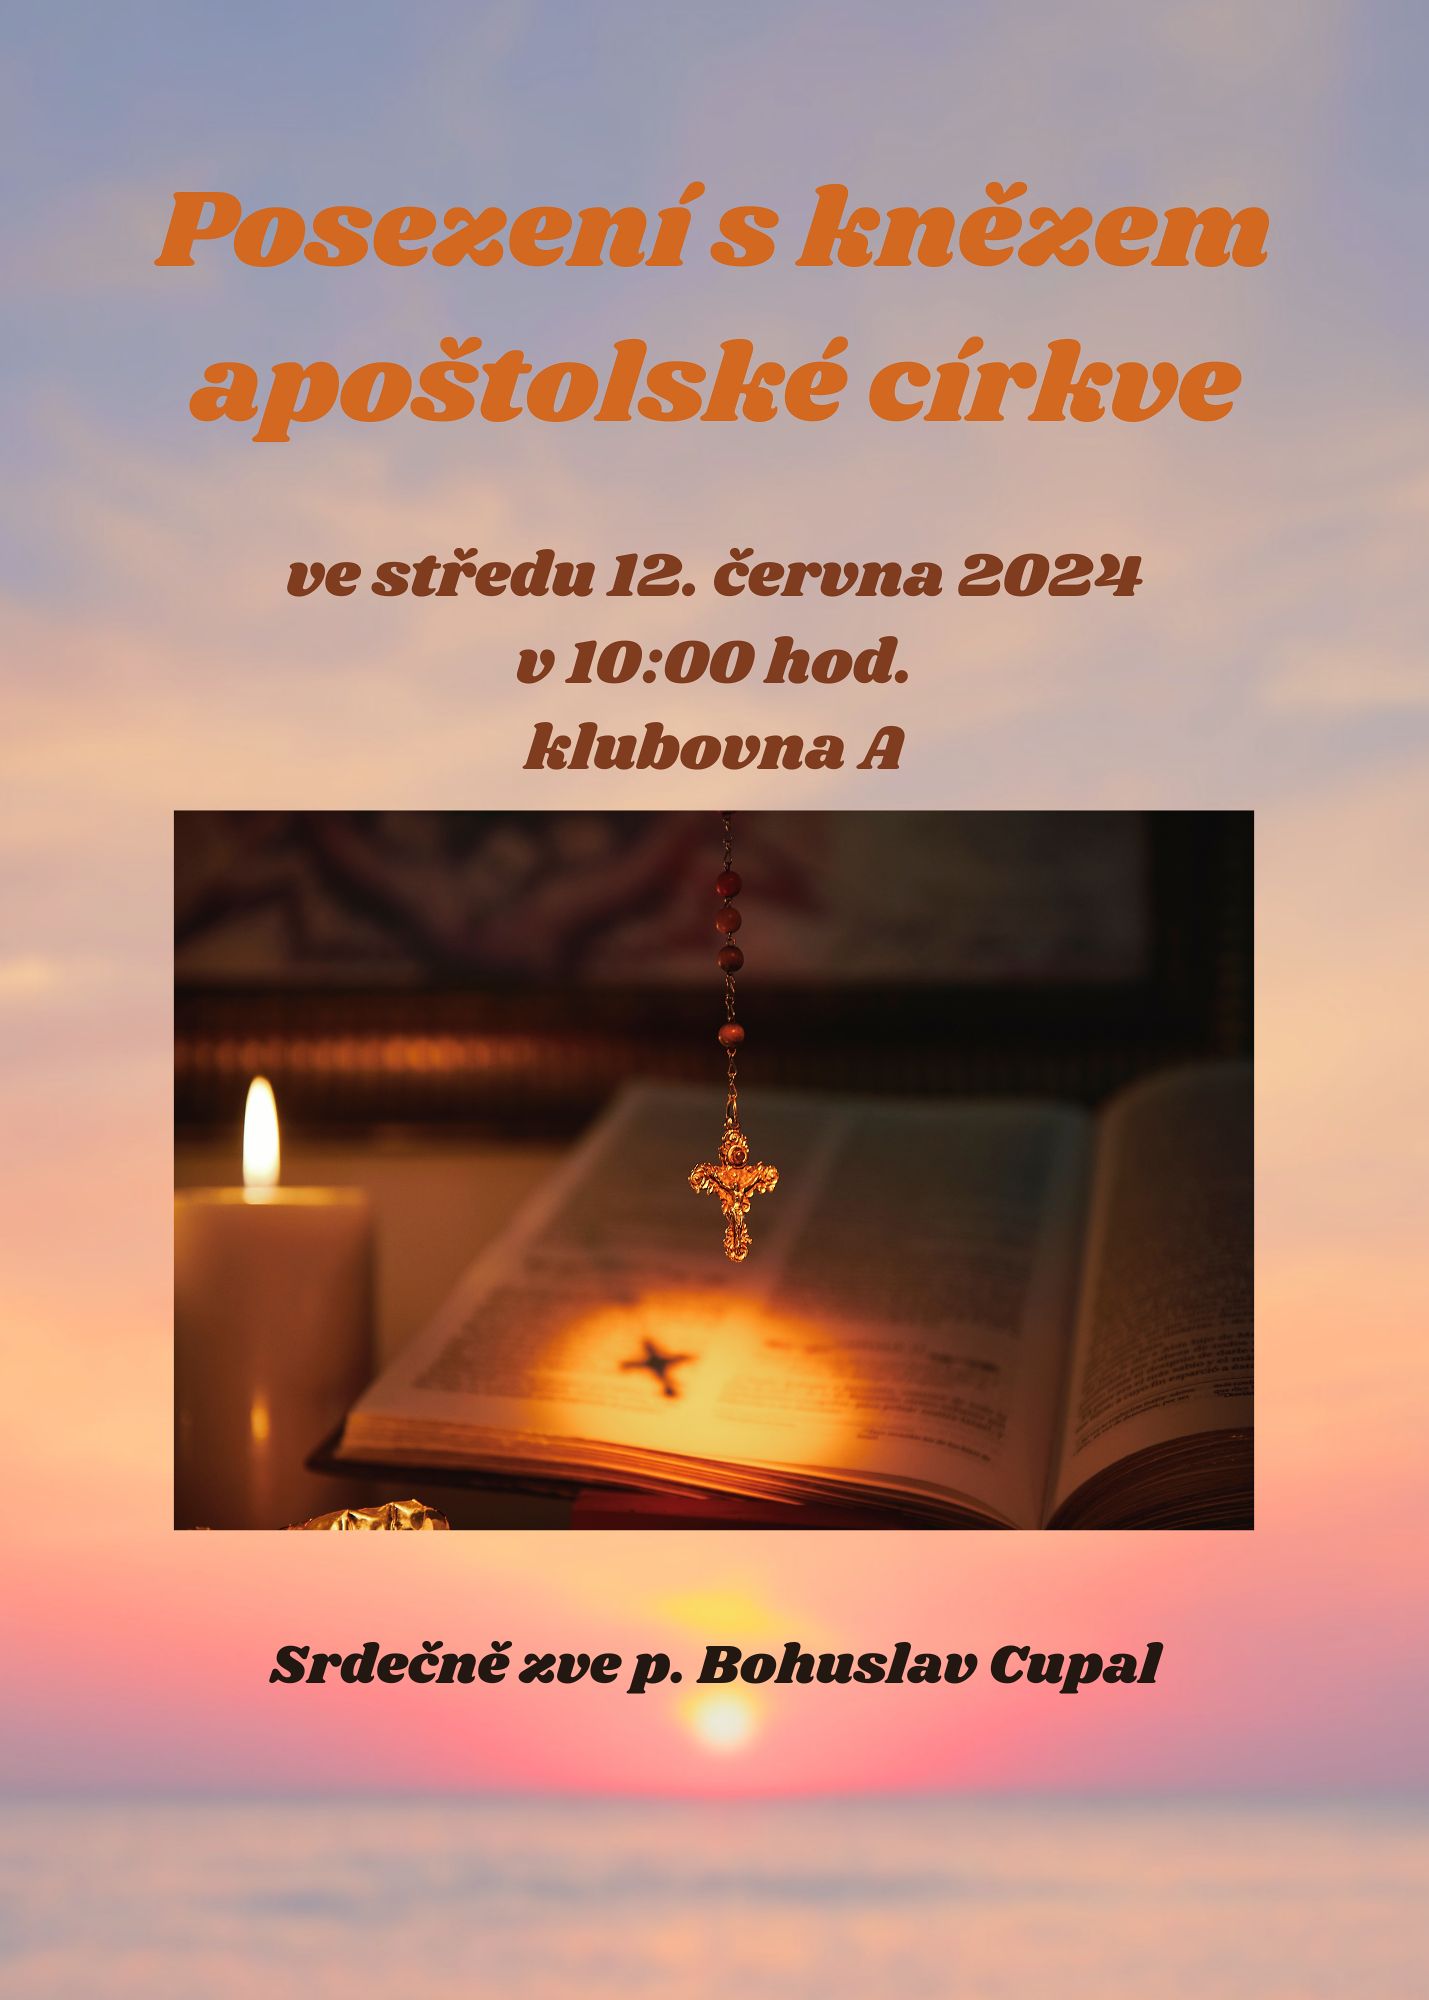 Posezeni-s-knezem-apostolske-cirkve-12-cervna-2024.jpg